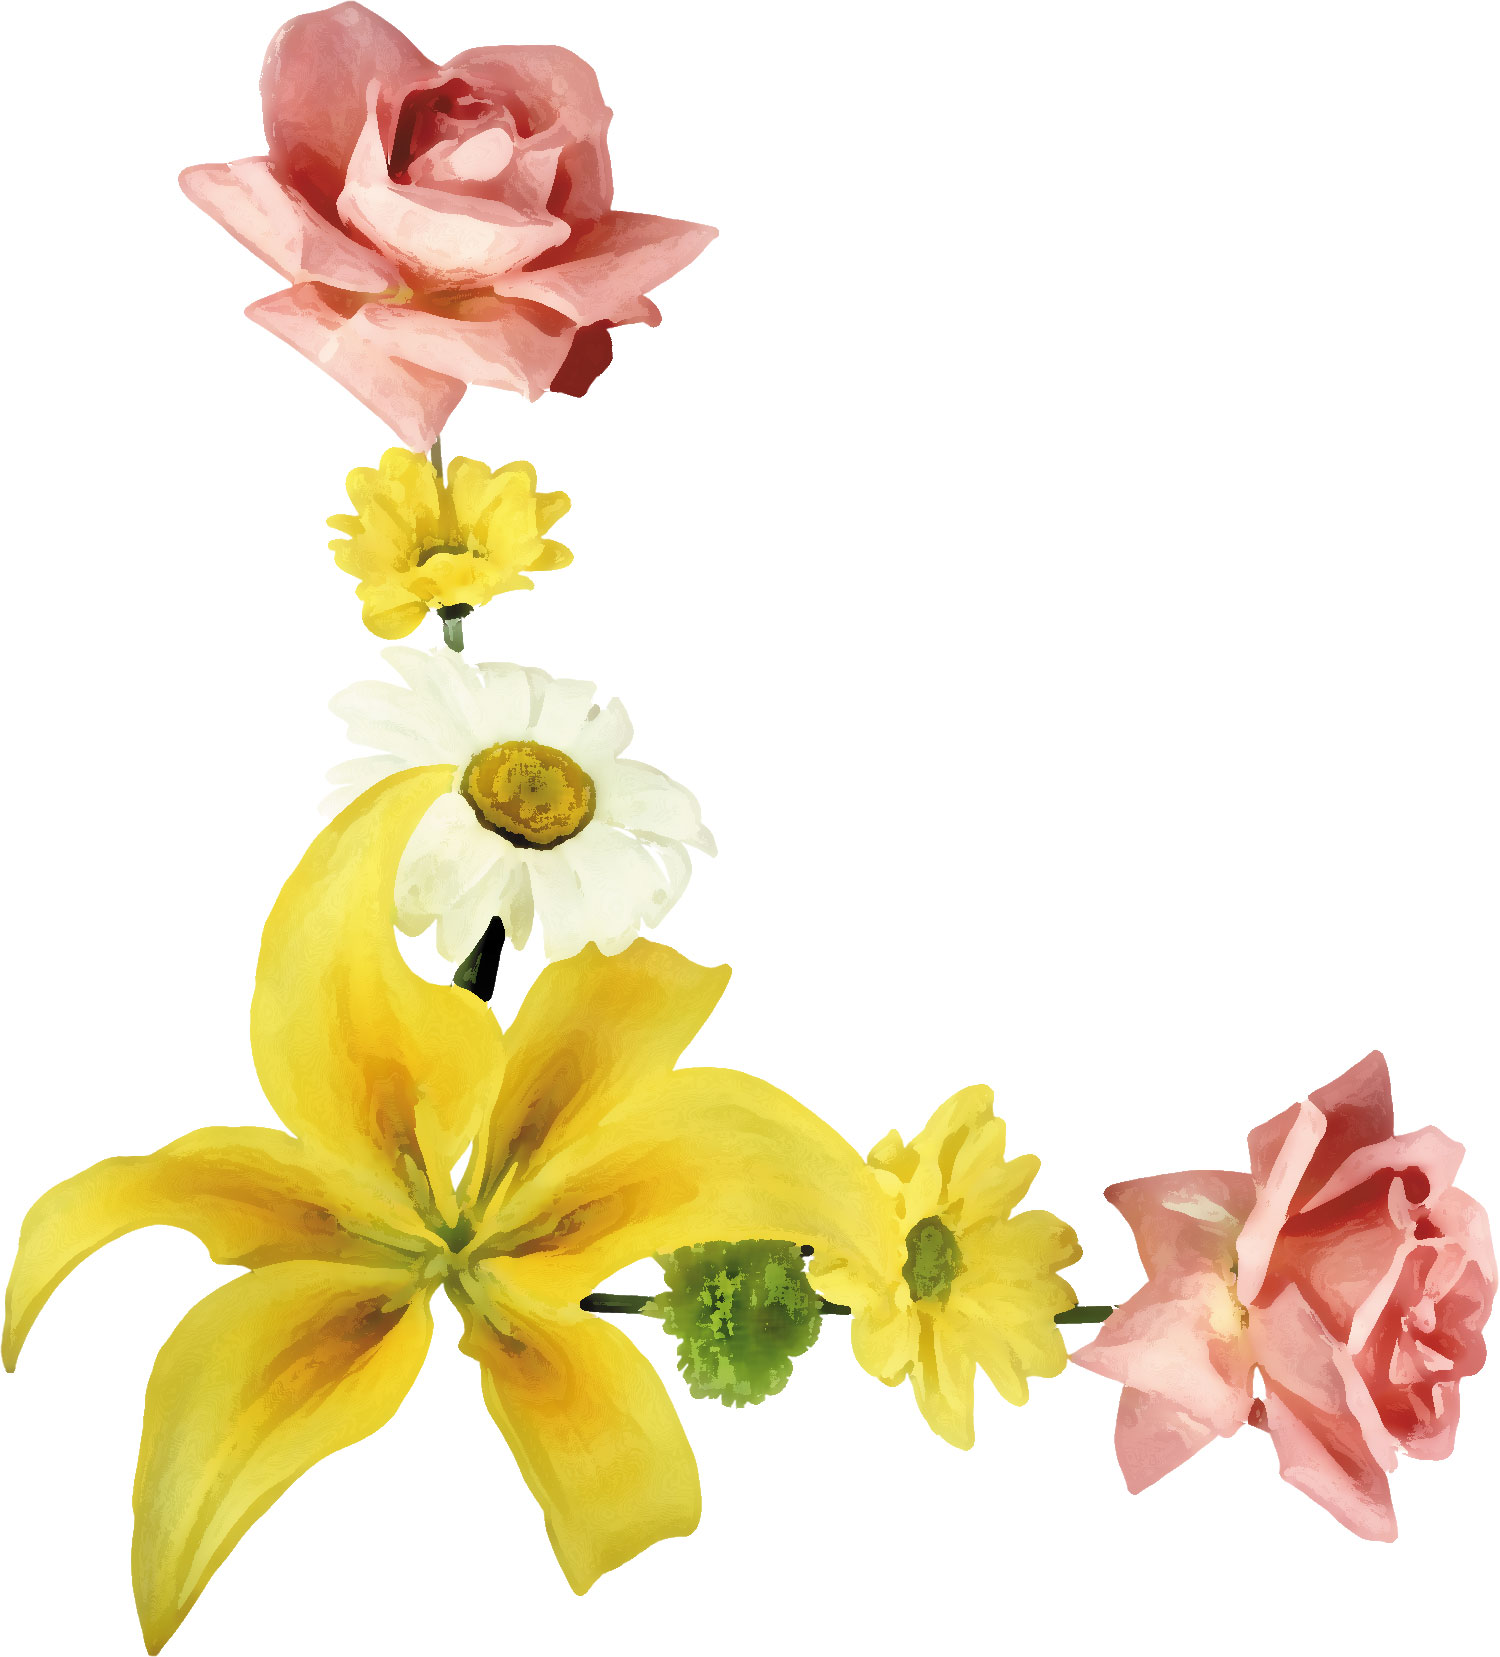 百合 ゆり の花の画像 イラスト フリー素材 No 179 ゆり バラ 白黄ピンク